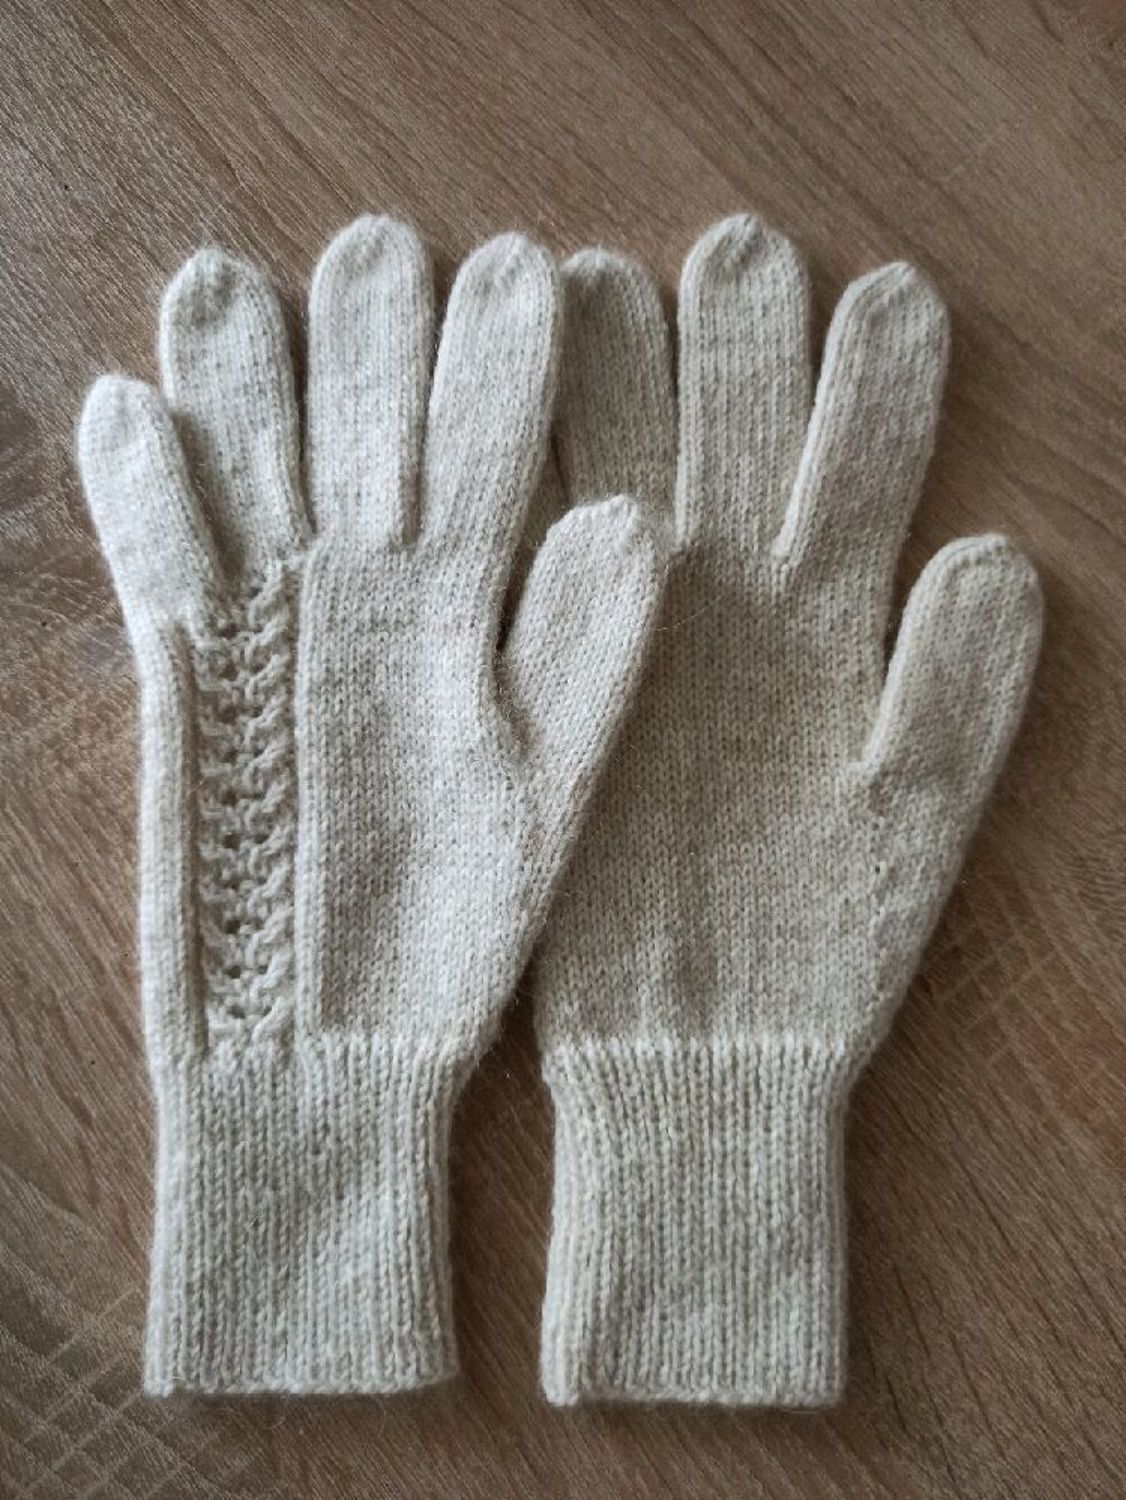 Photo №2 к отзыву покупателя Elena о товаре Пушистые, теплые перчатки молочного цвета.